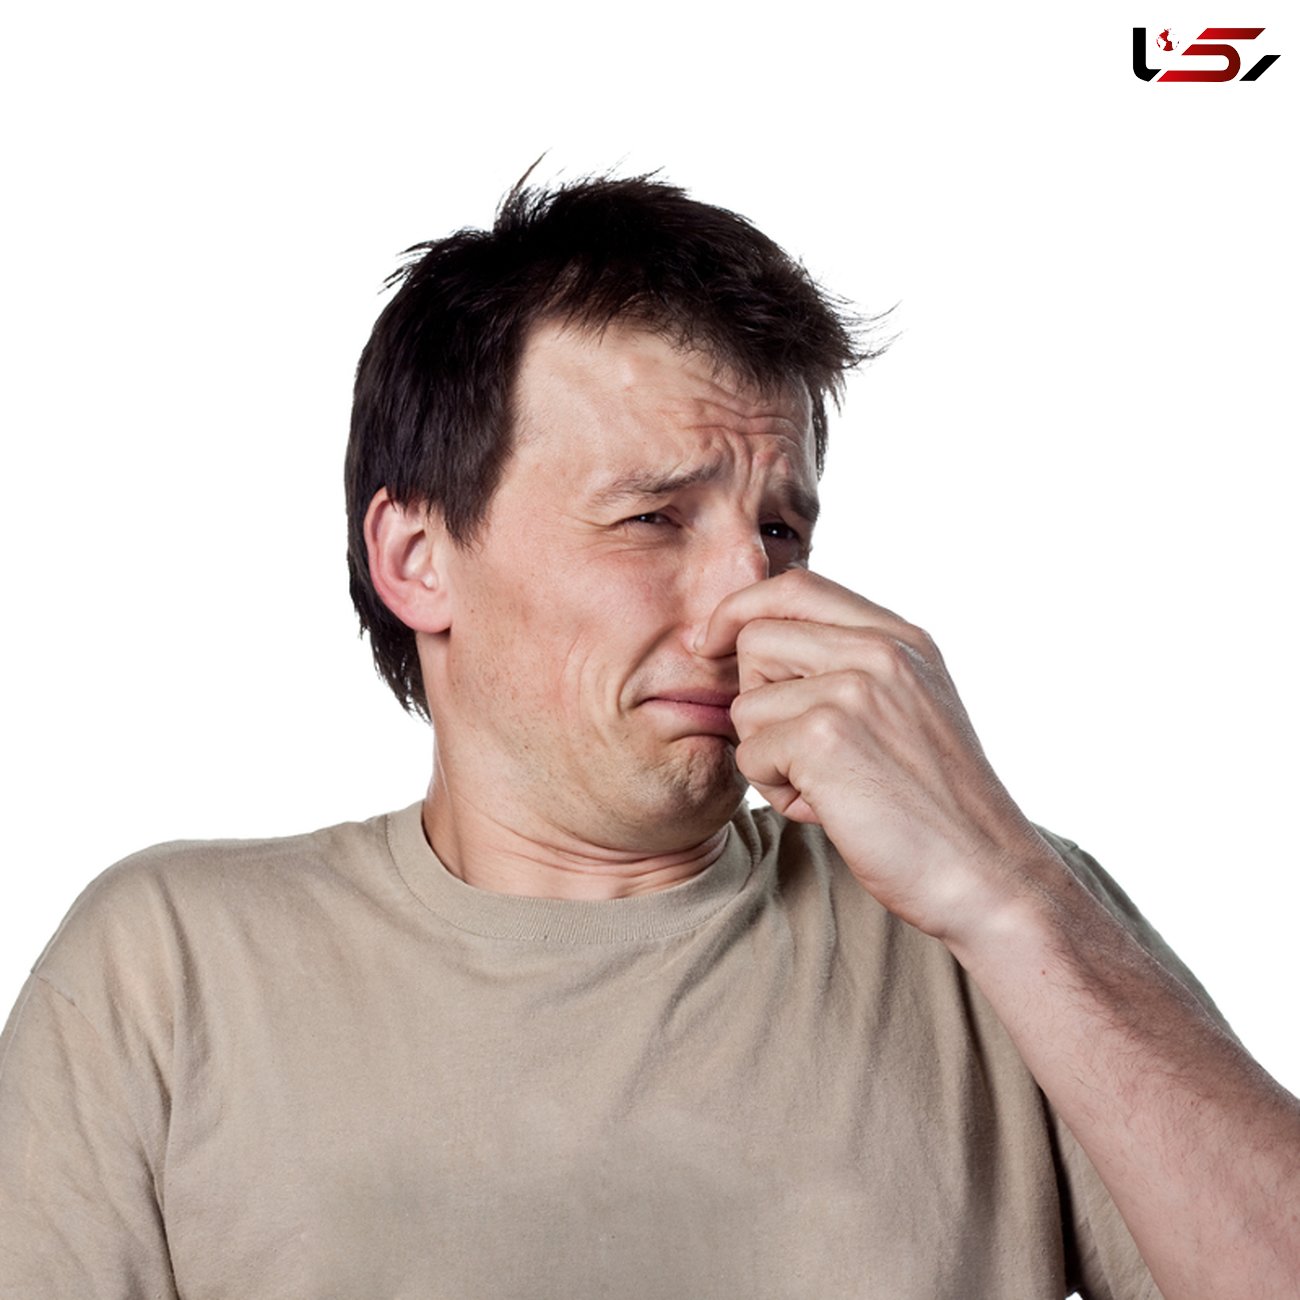 بوی بد بدن خبر از چه بیماری هایی می دهد؟